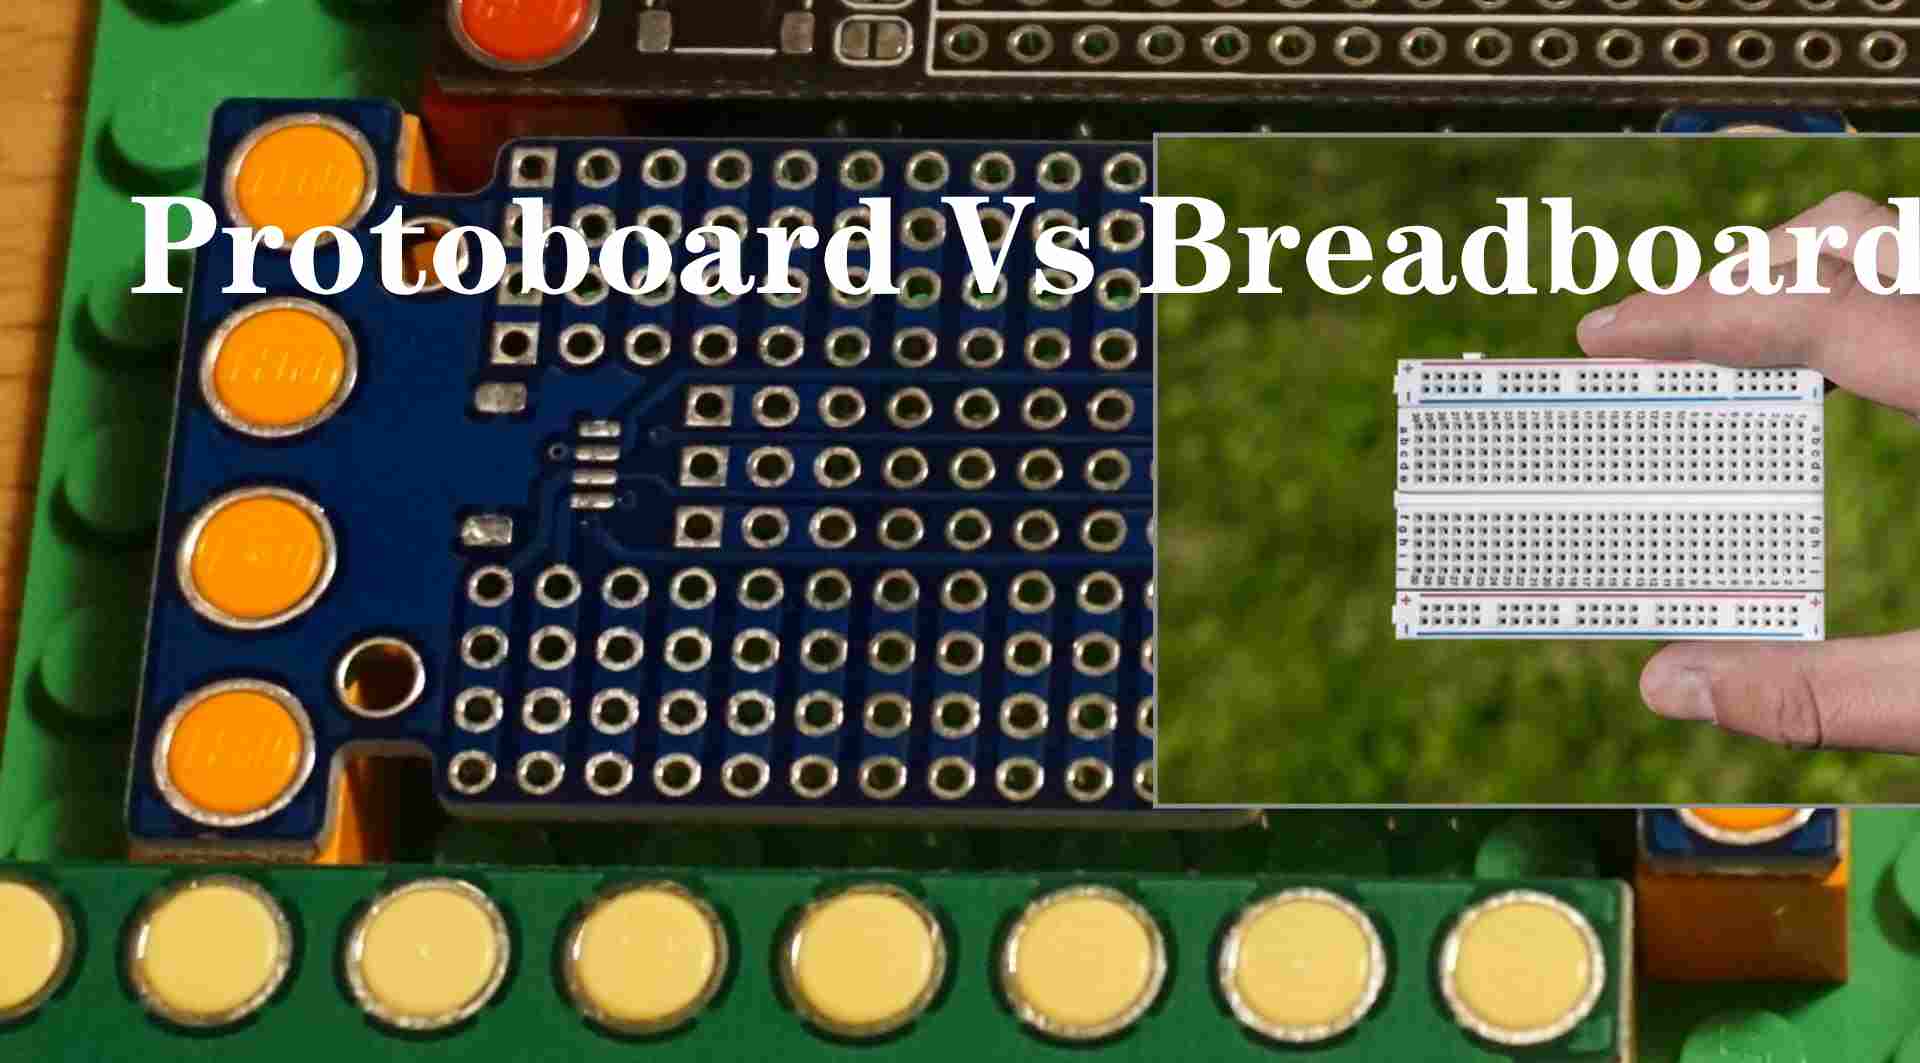 Protoboard-vs-Breadboard-4